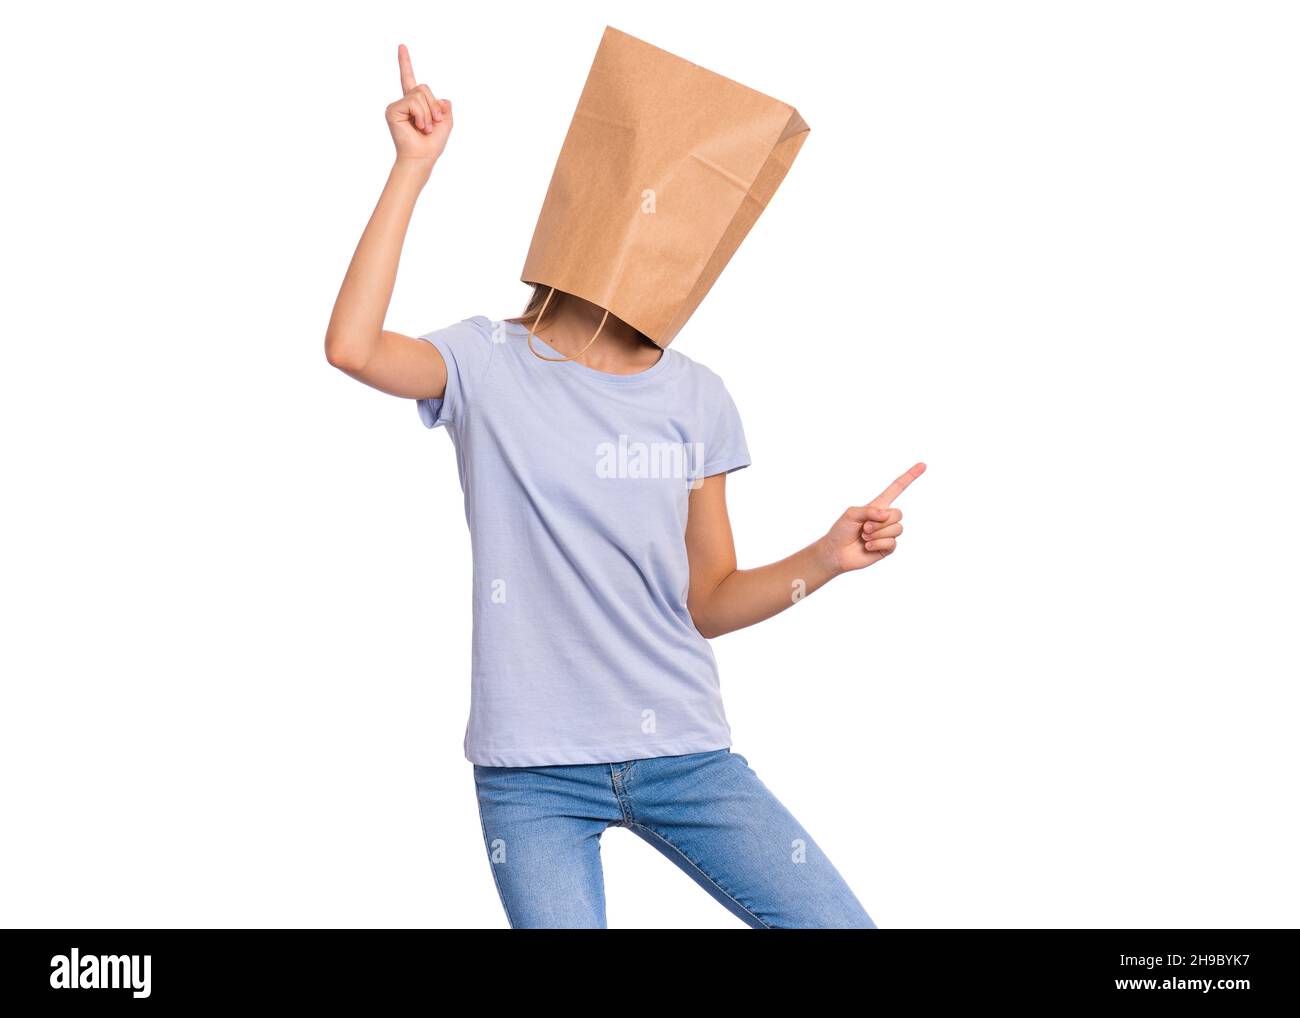 Ragazza con sacchetto di carta sulla testa che balla. Copertina per adolescenti, isolata su sfondo bianco. Bambino felice punta le dita in su. Foto Stock